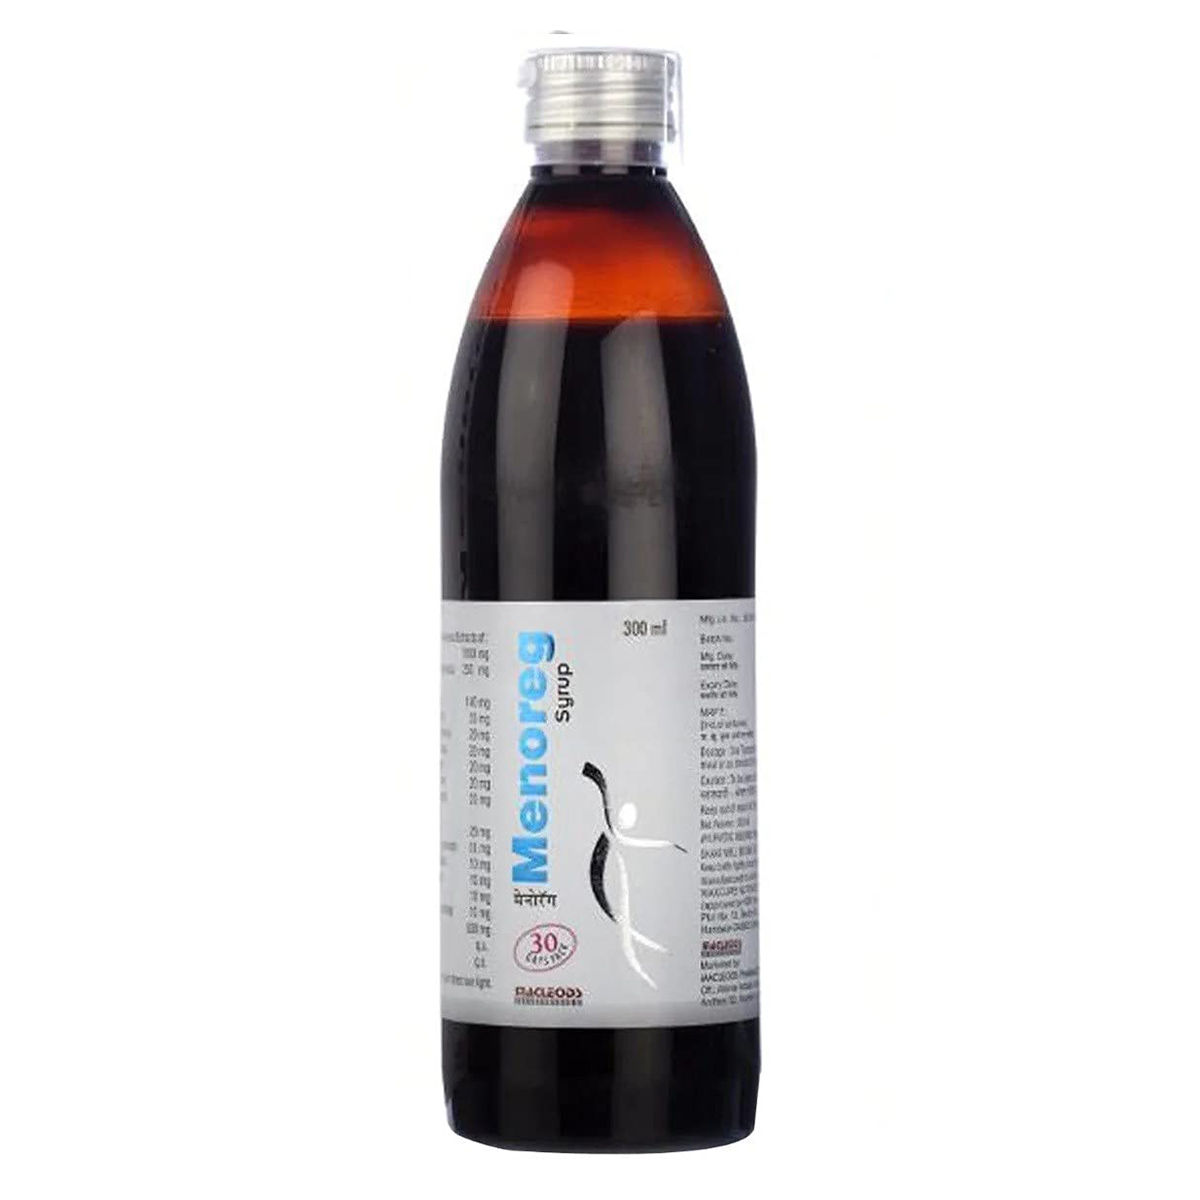 Buy Menoreg Syrup, 300 ml Online